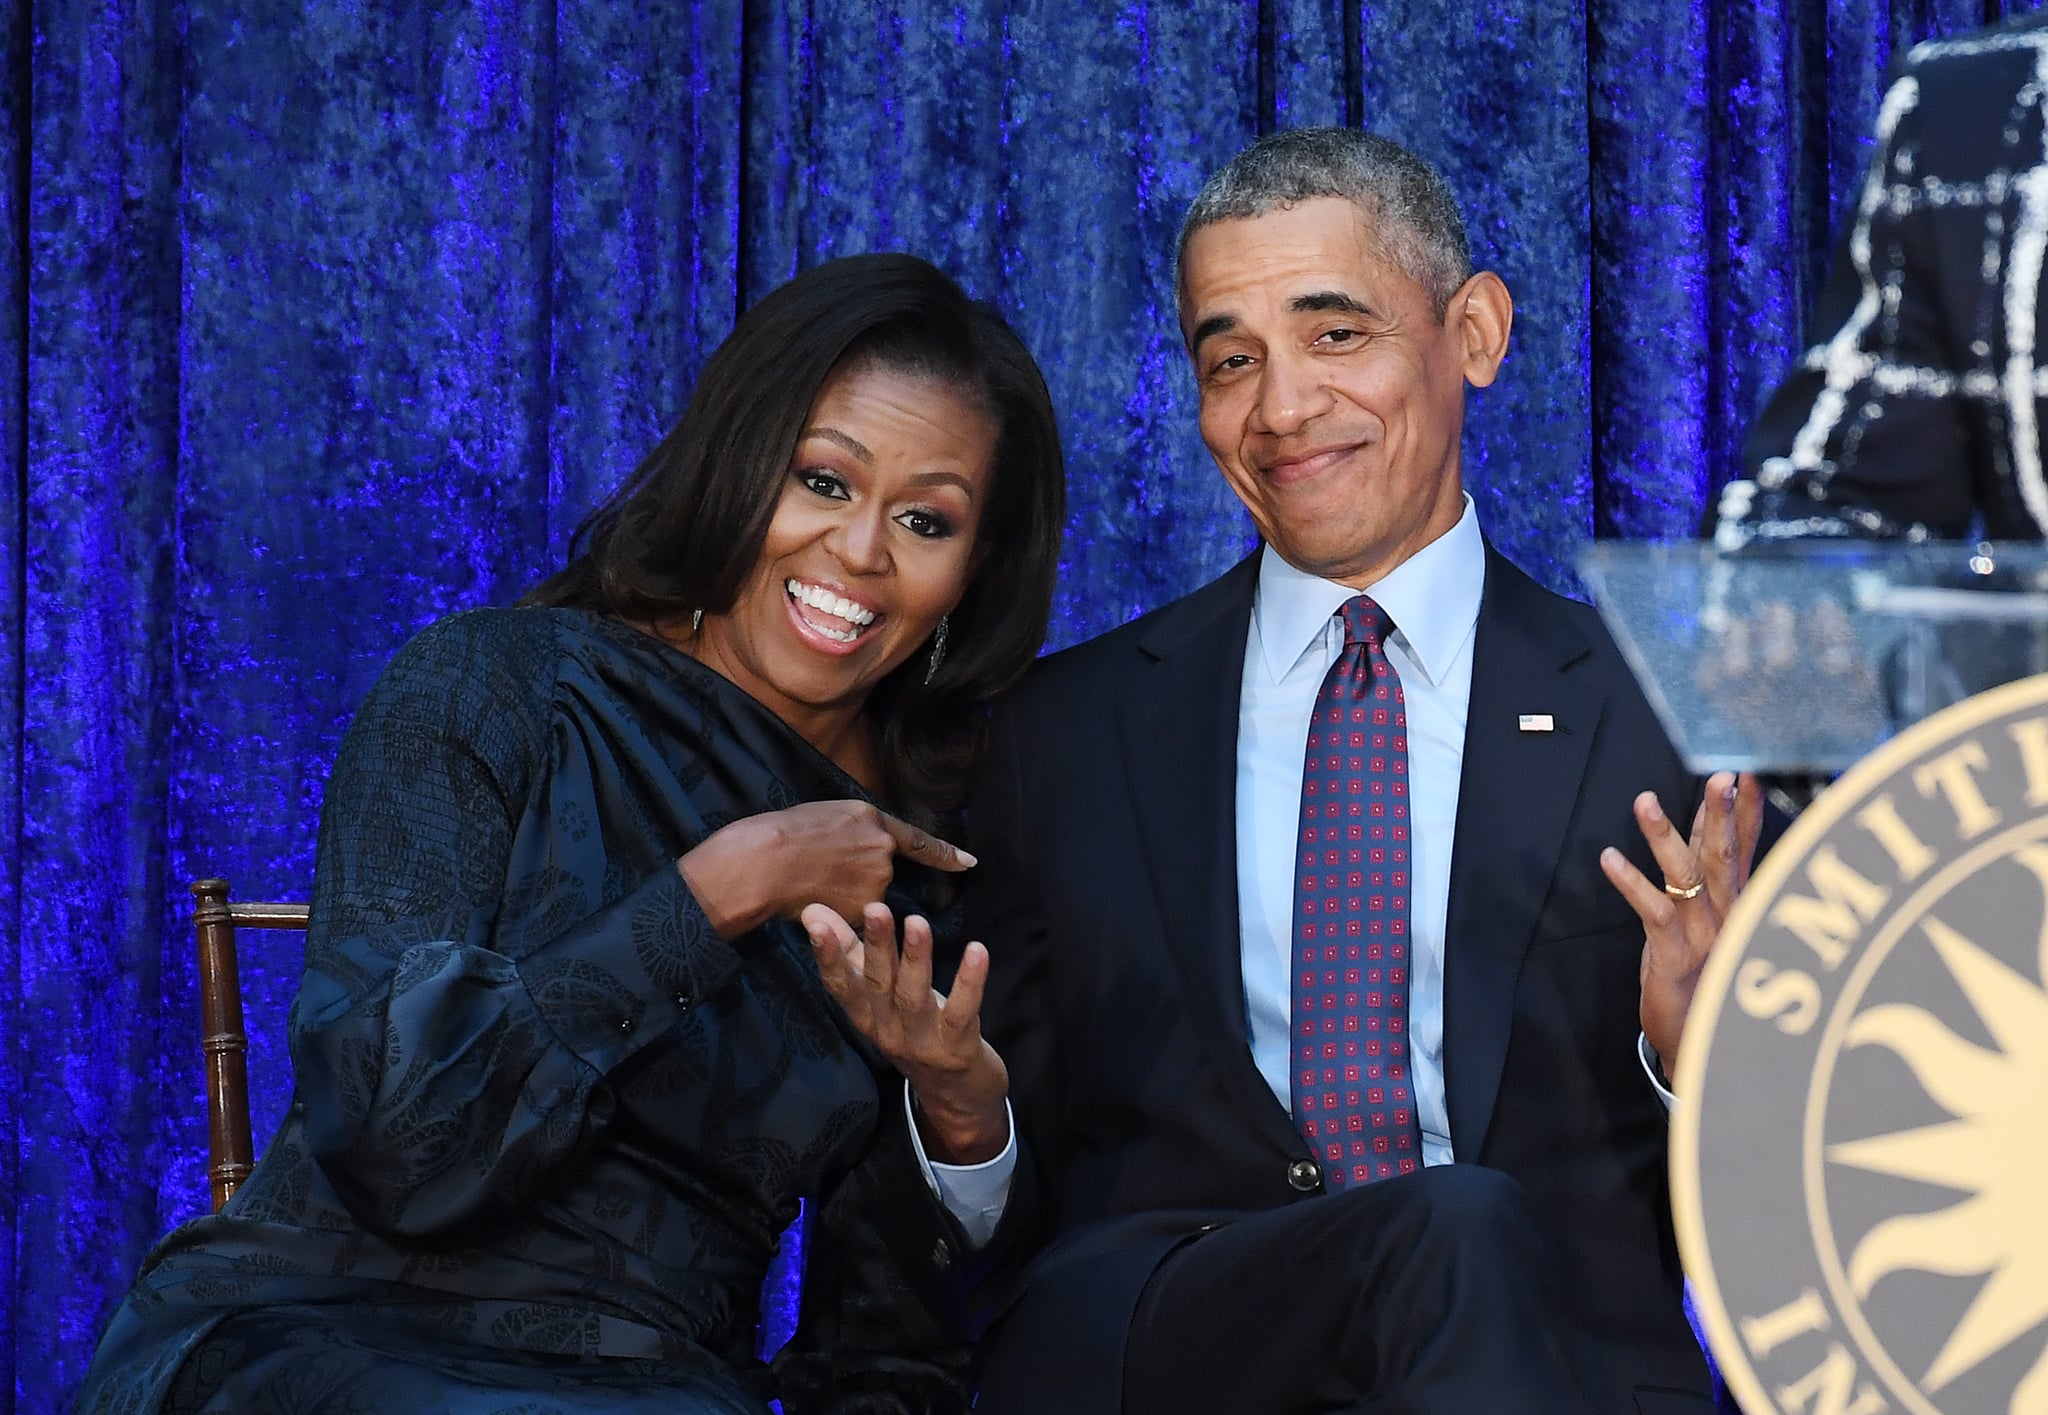 华盛顿特区- 2月12日:前第一夫人米歇尔·奥巴马和前总统巴拉克•奥巴马(Barack Obama)后看到他们的肖像被公布在史密森国家肖像画廊周一2月12日,在华盛顿特区2018年。这位前总统的画像画了Kehinde威利,这位前第一夫人的画像被艾米Sherald画。(照片由马特·麦克莱恩/《华盛顿邮报》通过盖蒂图片社)